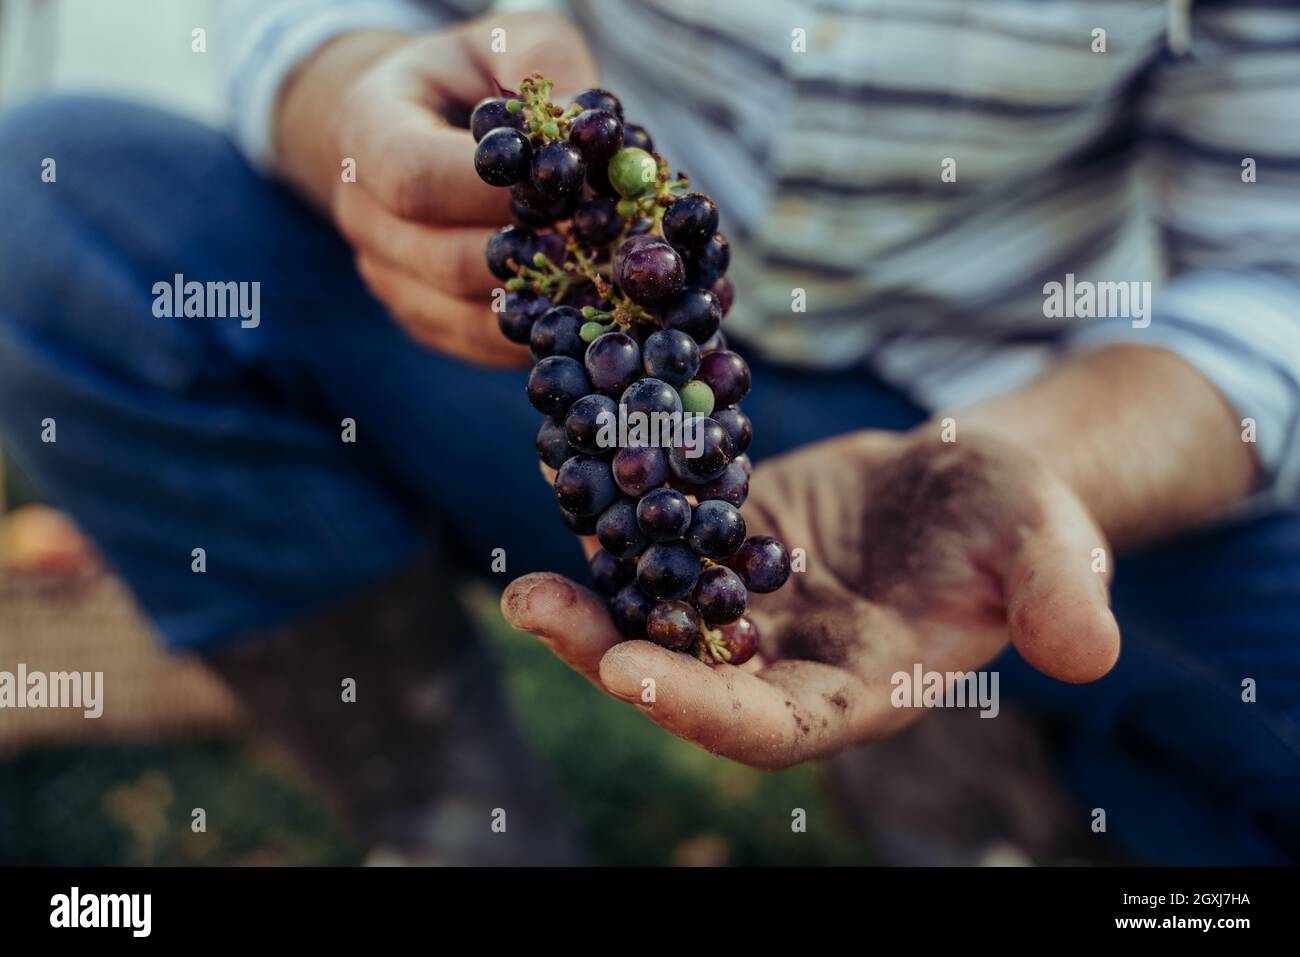 Granjero caucásico que sostiene manojo de uvas rojas recién recolectadas en las manos Foto de stock